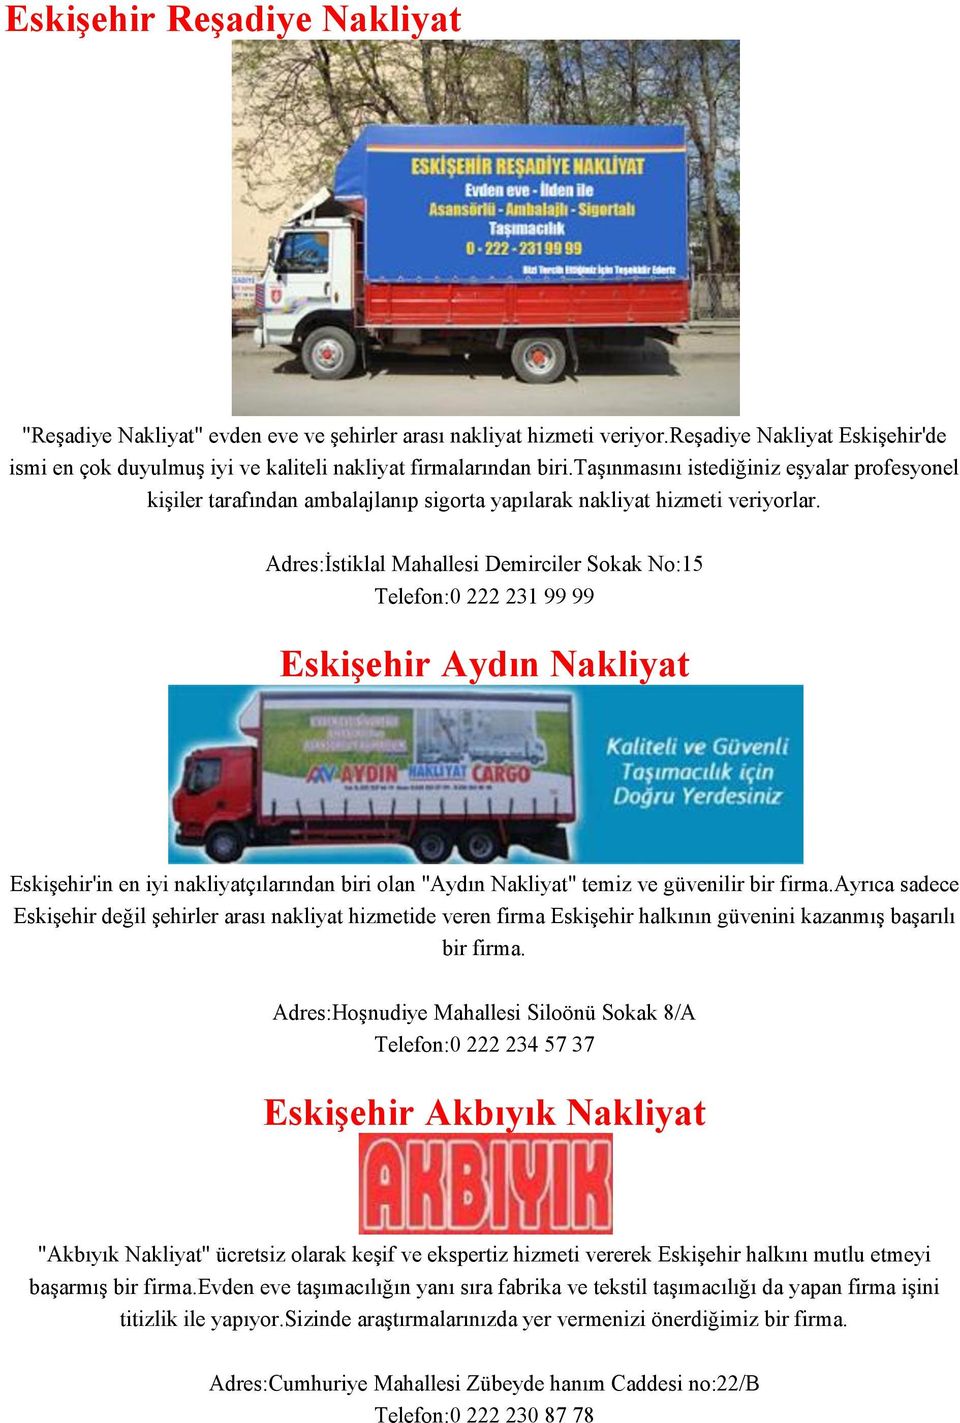 Adres:İstiklal Mahallesi Demirciler Sokak No:15 Telefon:0 222 231 99 99 Eskişehir Aydın Nakliyat Eskişehir'in en iyi nakliyatçılarından biri olan "Aydın Nakliyat" temiz ve güvenilir bir firma.